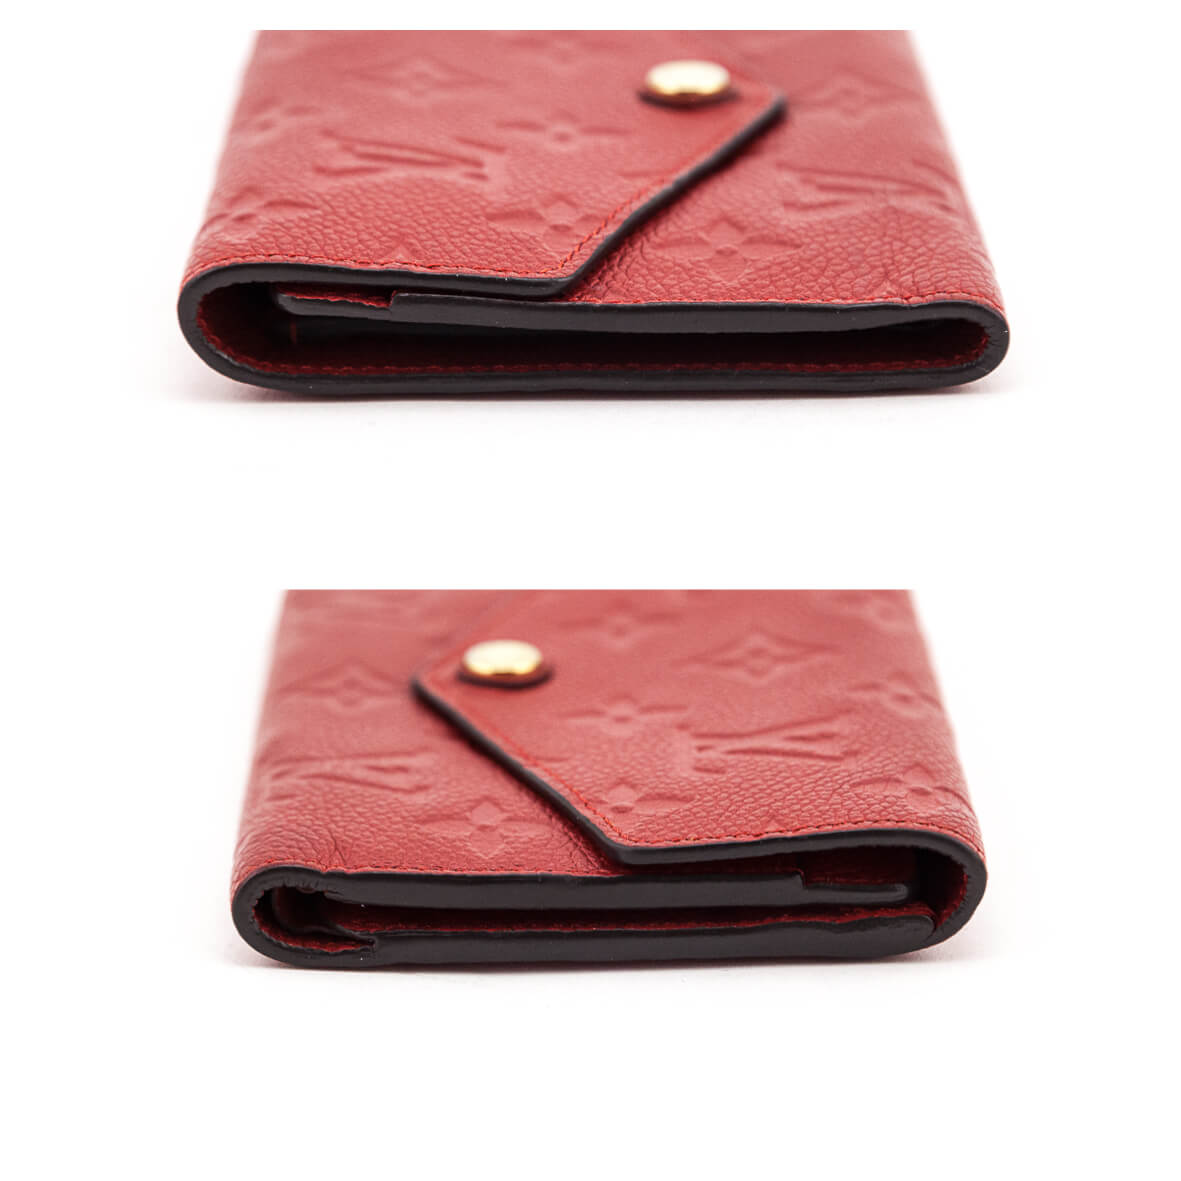 Louis Vuitton Cerise Monogram Empreinte Compact Curieuse Wallet